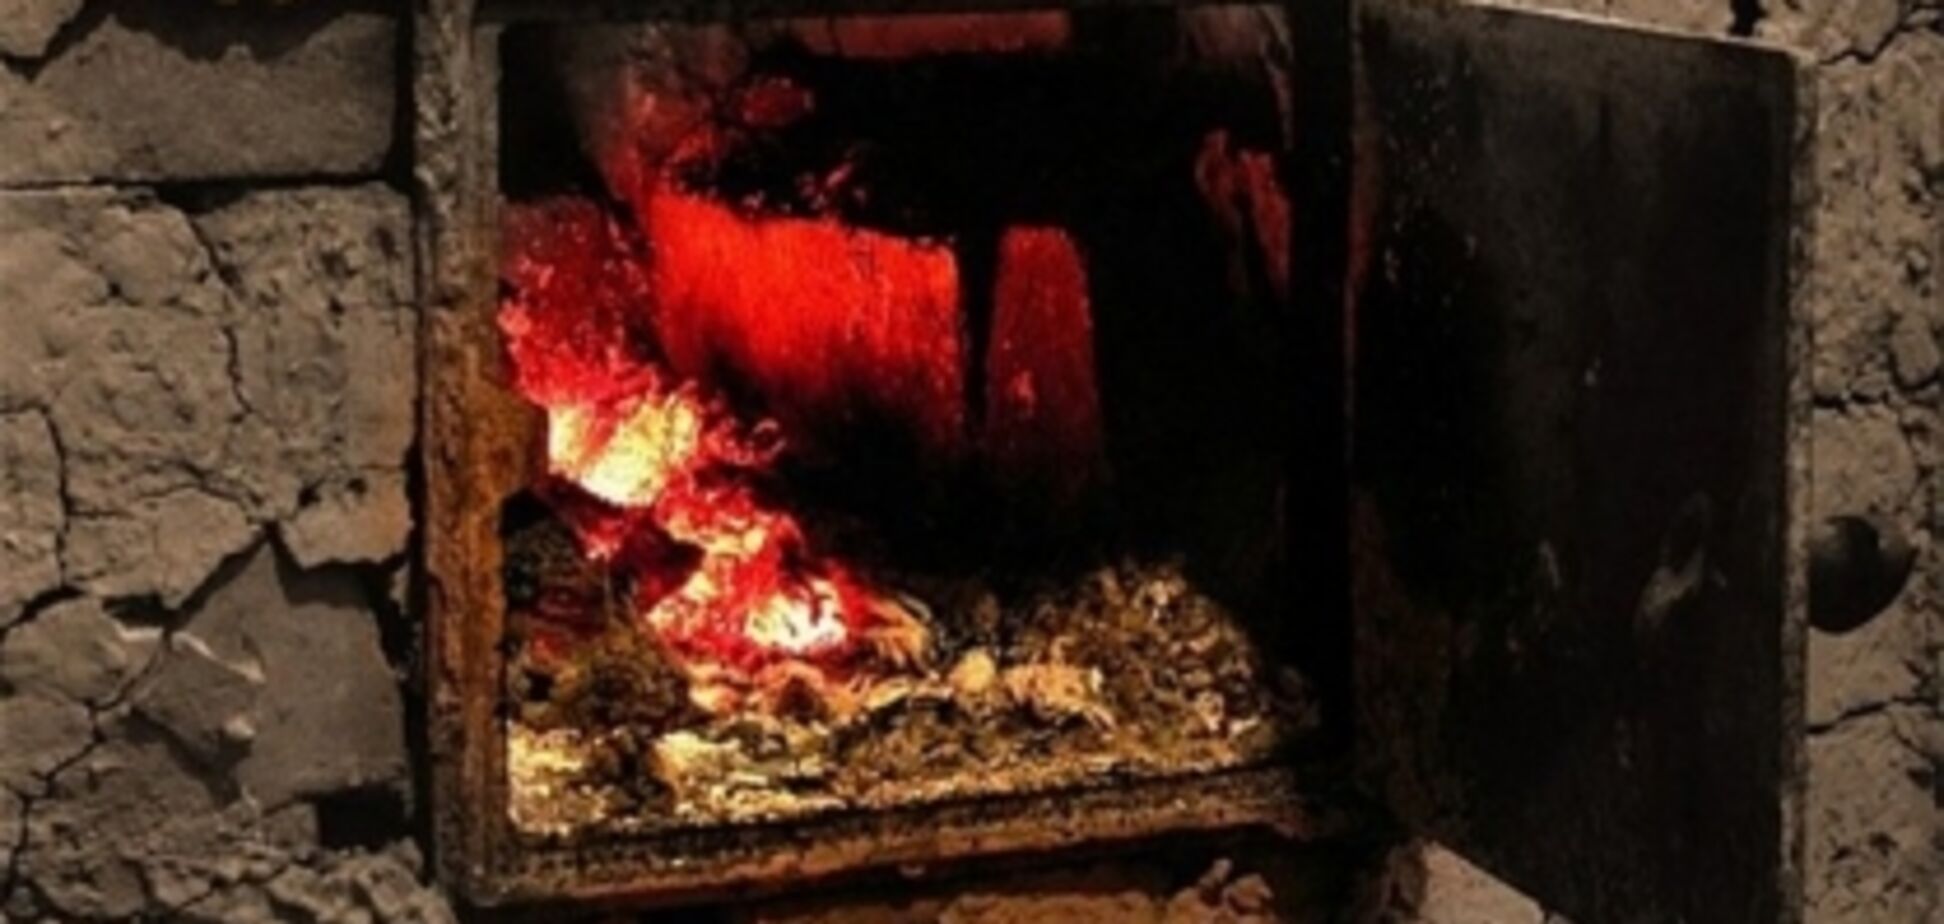 Обугленное тело нашли в печи: в России дедушка с бабушкой заживо сожгли годовалого внука 